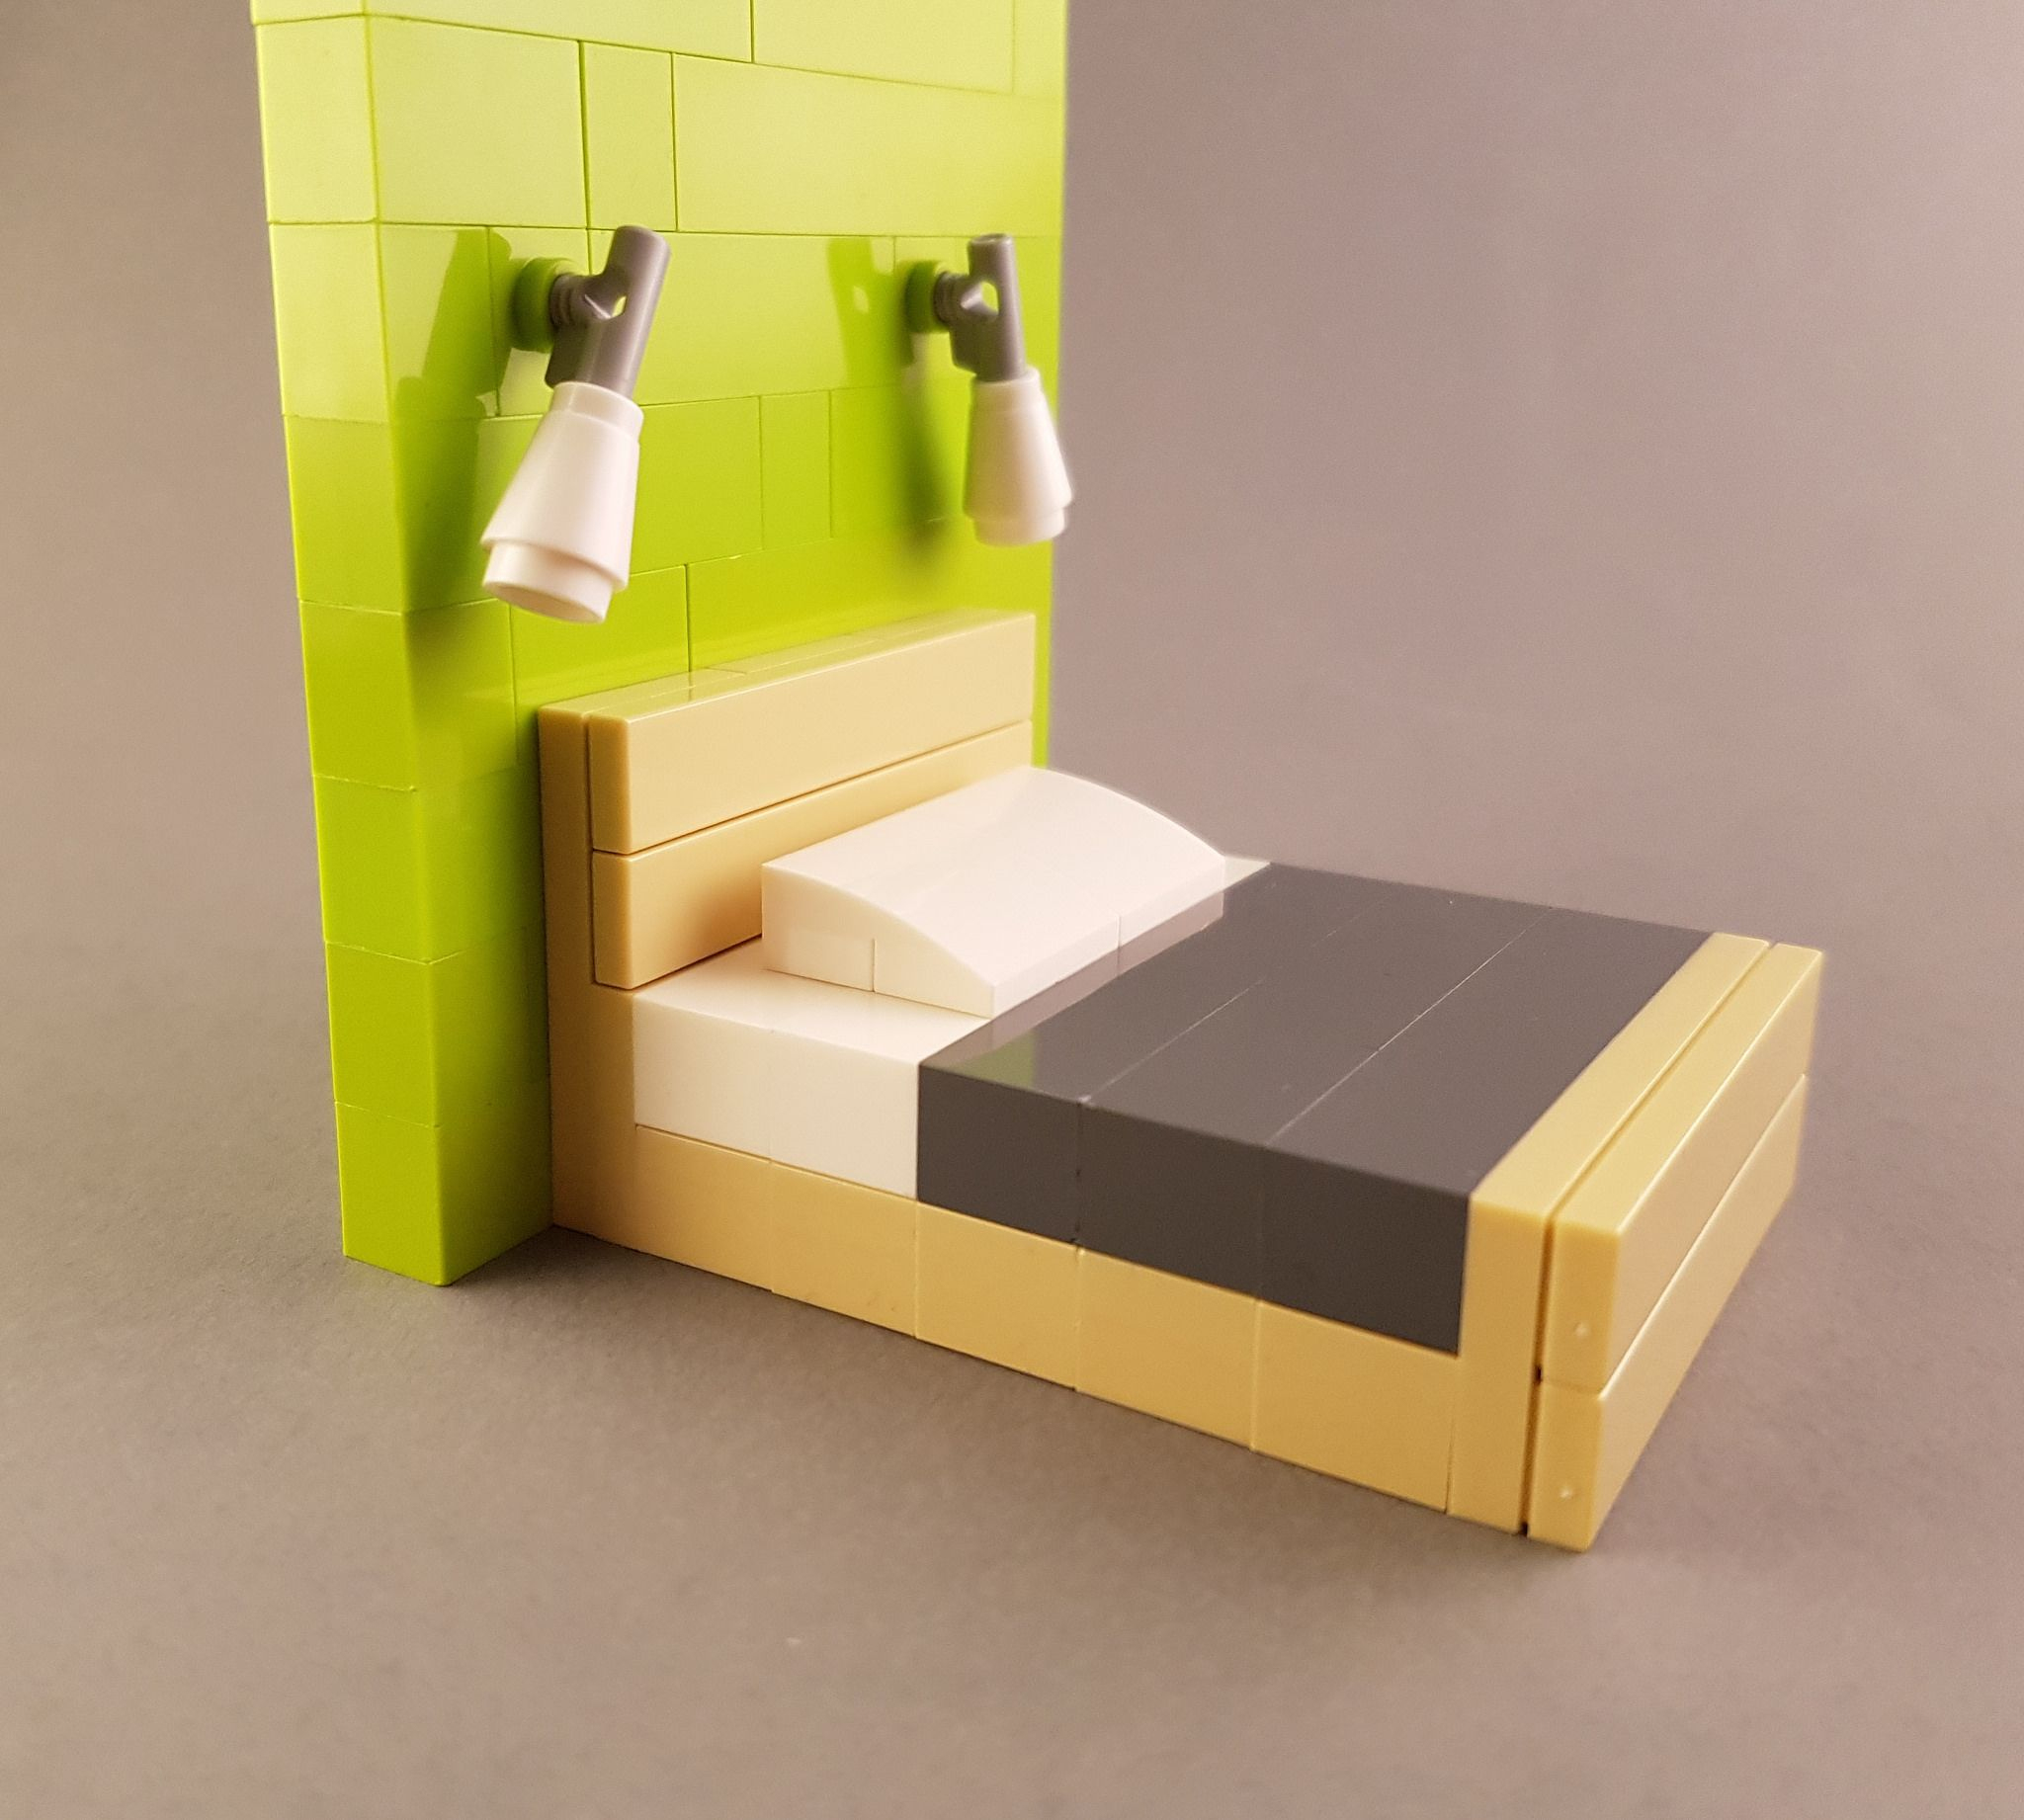 Bed Moc Inspired By Scandinavian Design Ii | Idées Lego encequiconcerne Meuble En Lego